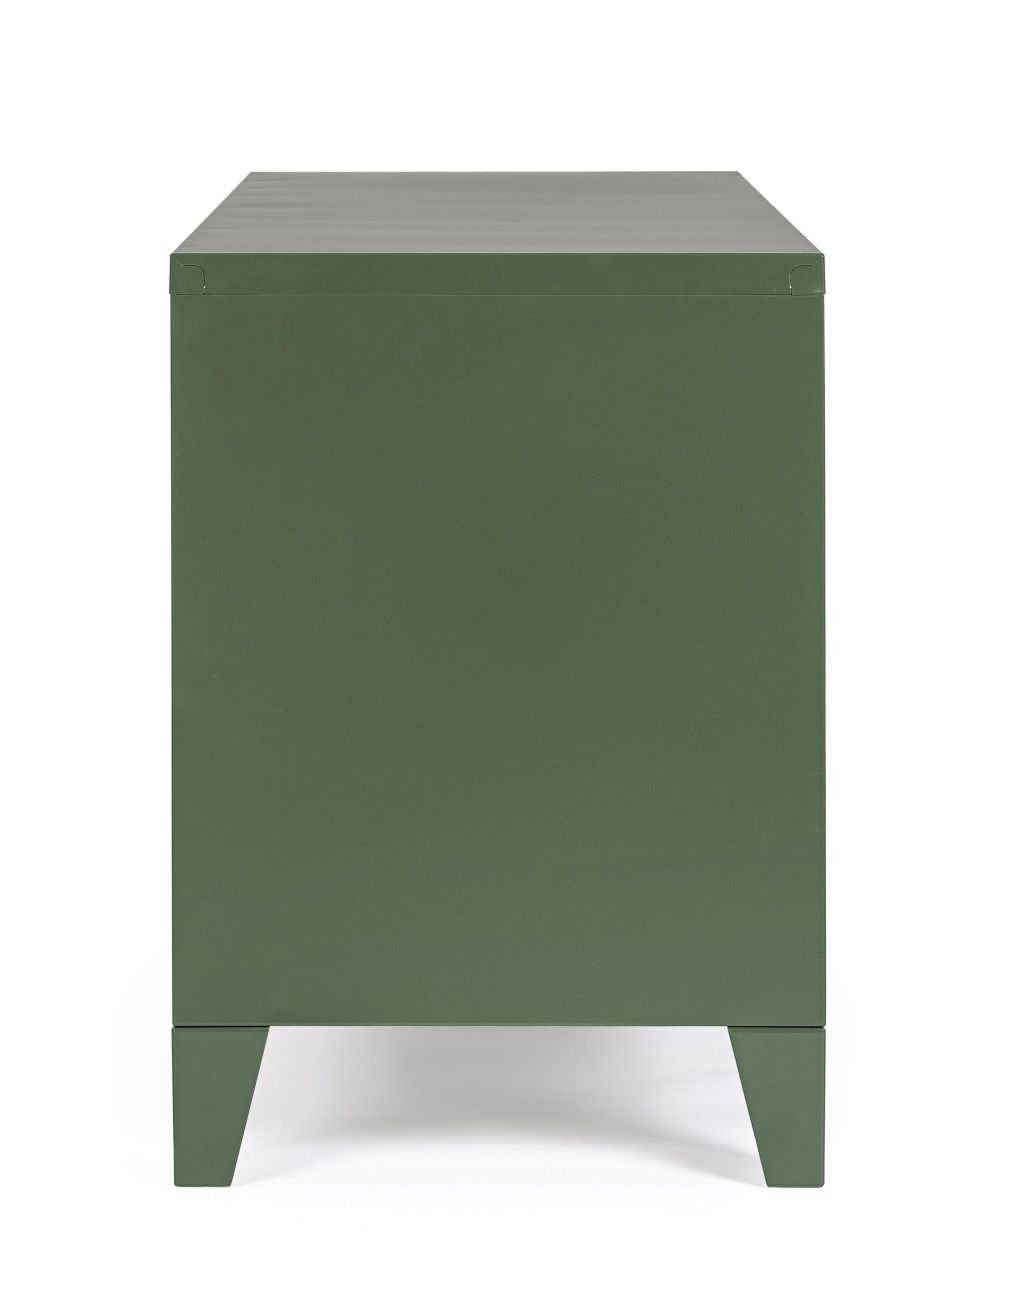 Das TV Board Cambridge überzeugt mit seinem modernen Stil. Gefertigt wurde es aus Metall, welches einen grünen Farbton besitzt. Das Gestell ist auch aus Metall und hat eine grüne Farbe. Das TV Board verfügt über zwei Türen und zwei Fächer.